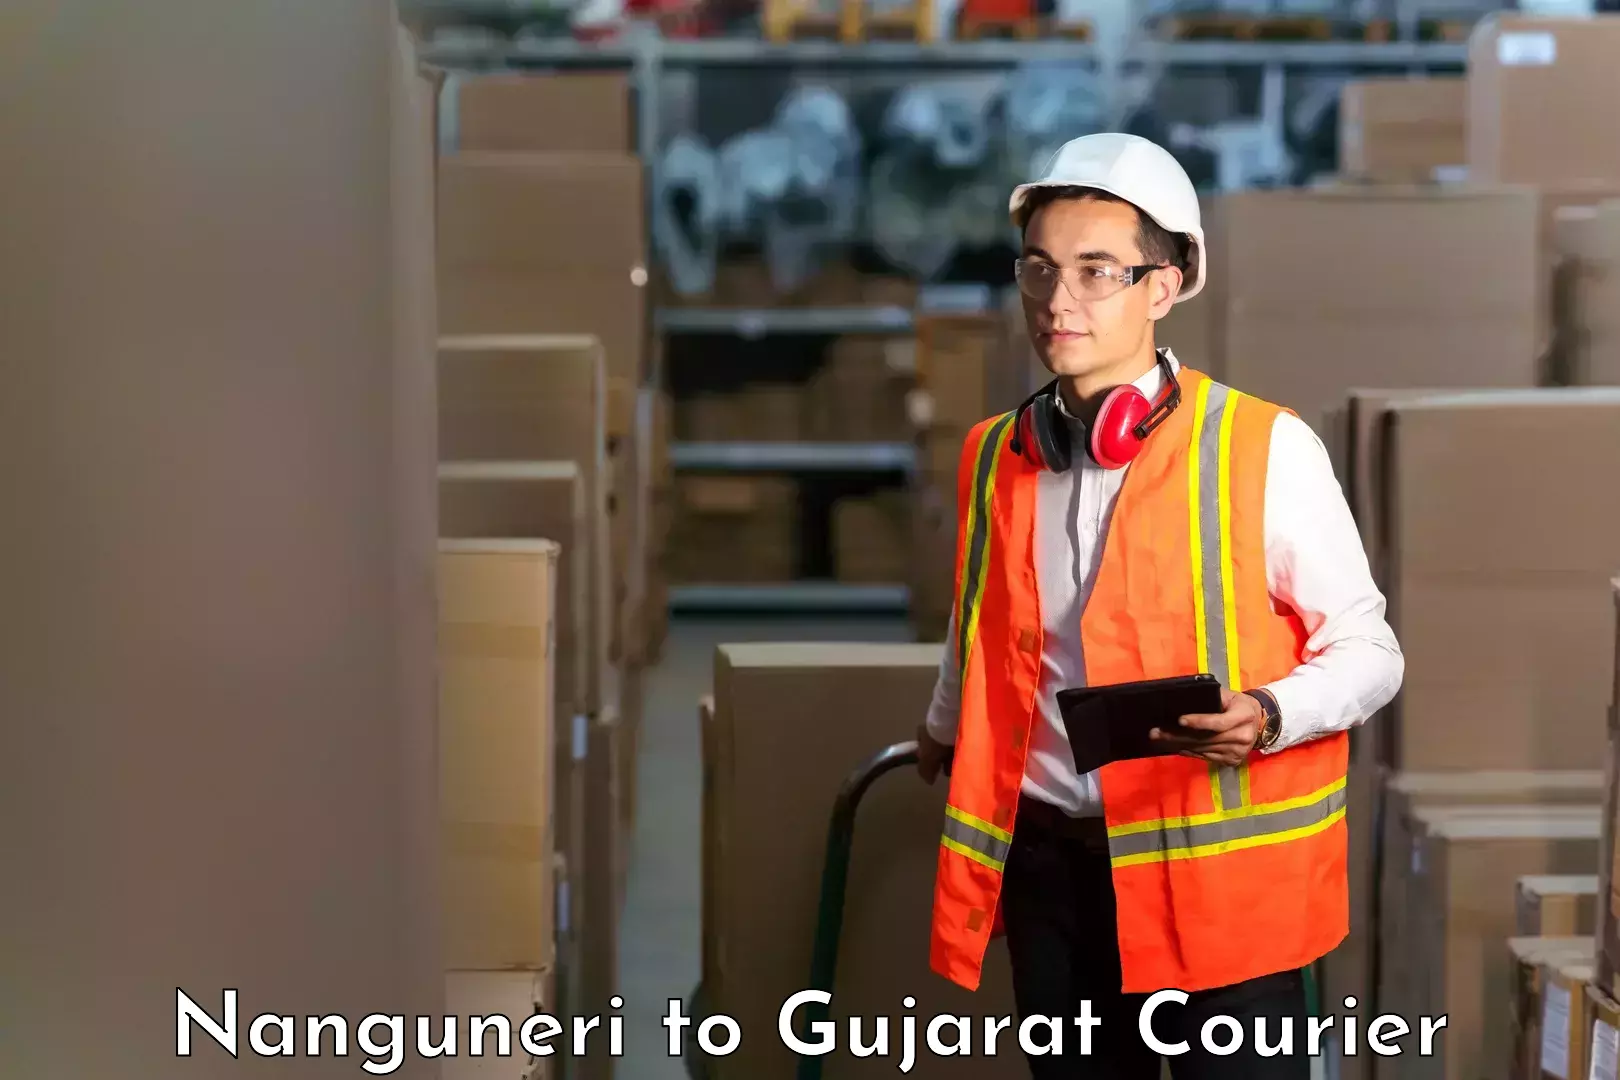 Customer-oriented courier services Nanguneri to Gujarat